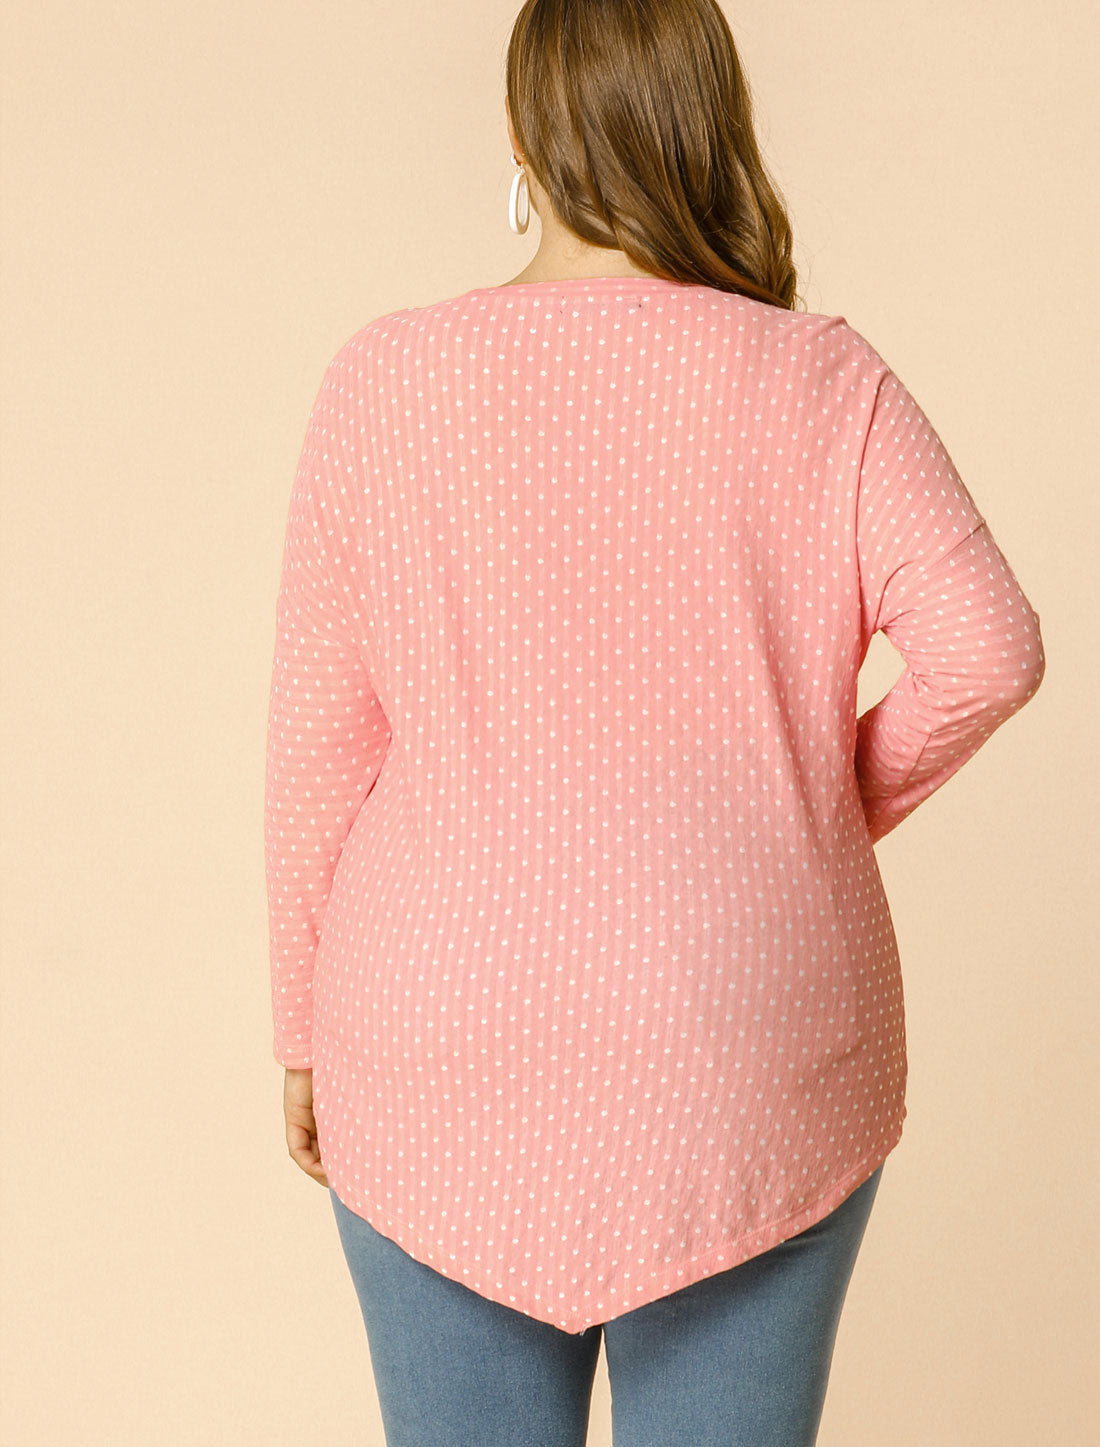 Bublédon Women's Plus Size Polka Dot Tops Asymmetrical Hem Top